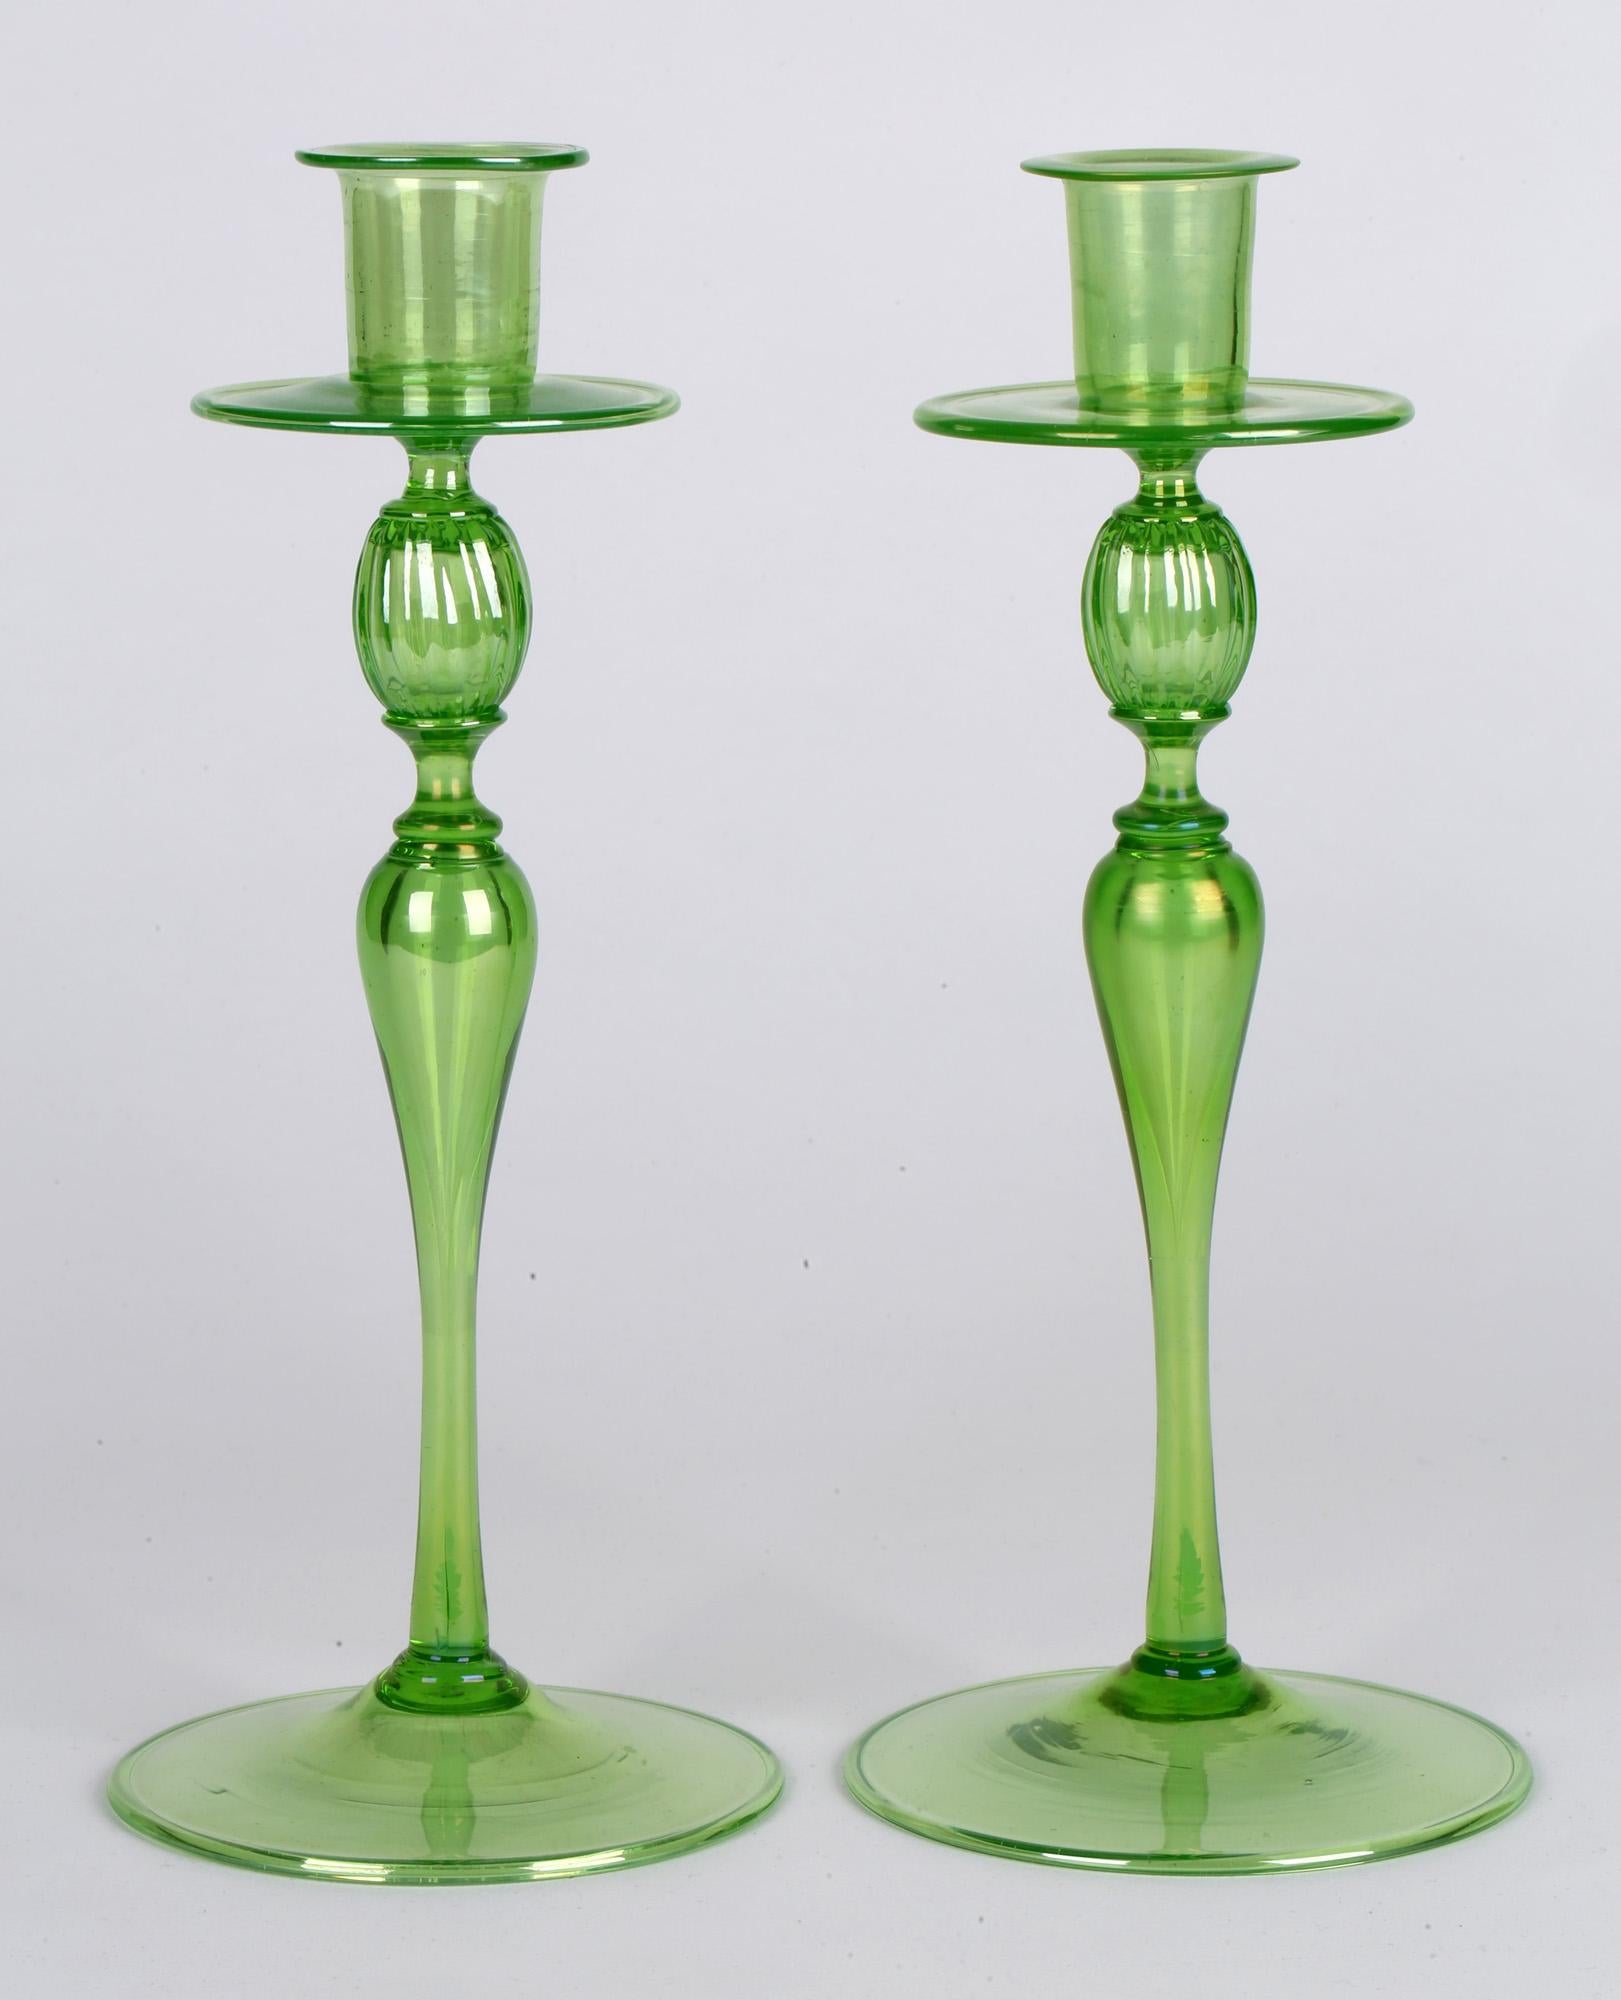 green glass candlesticks